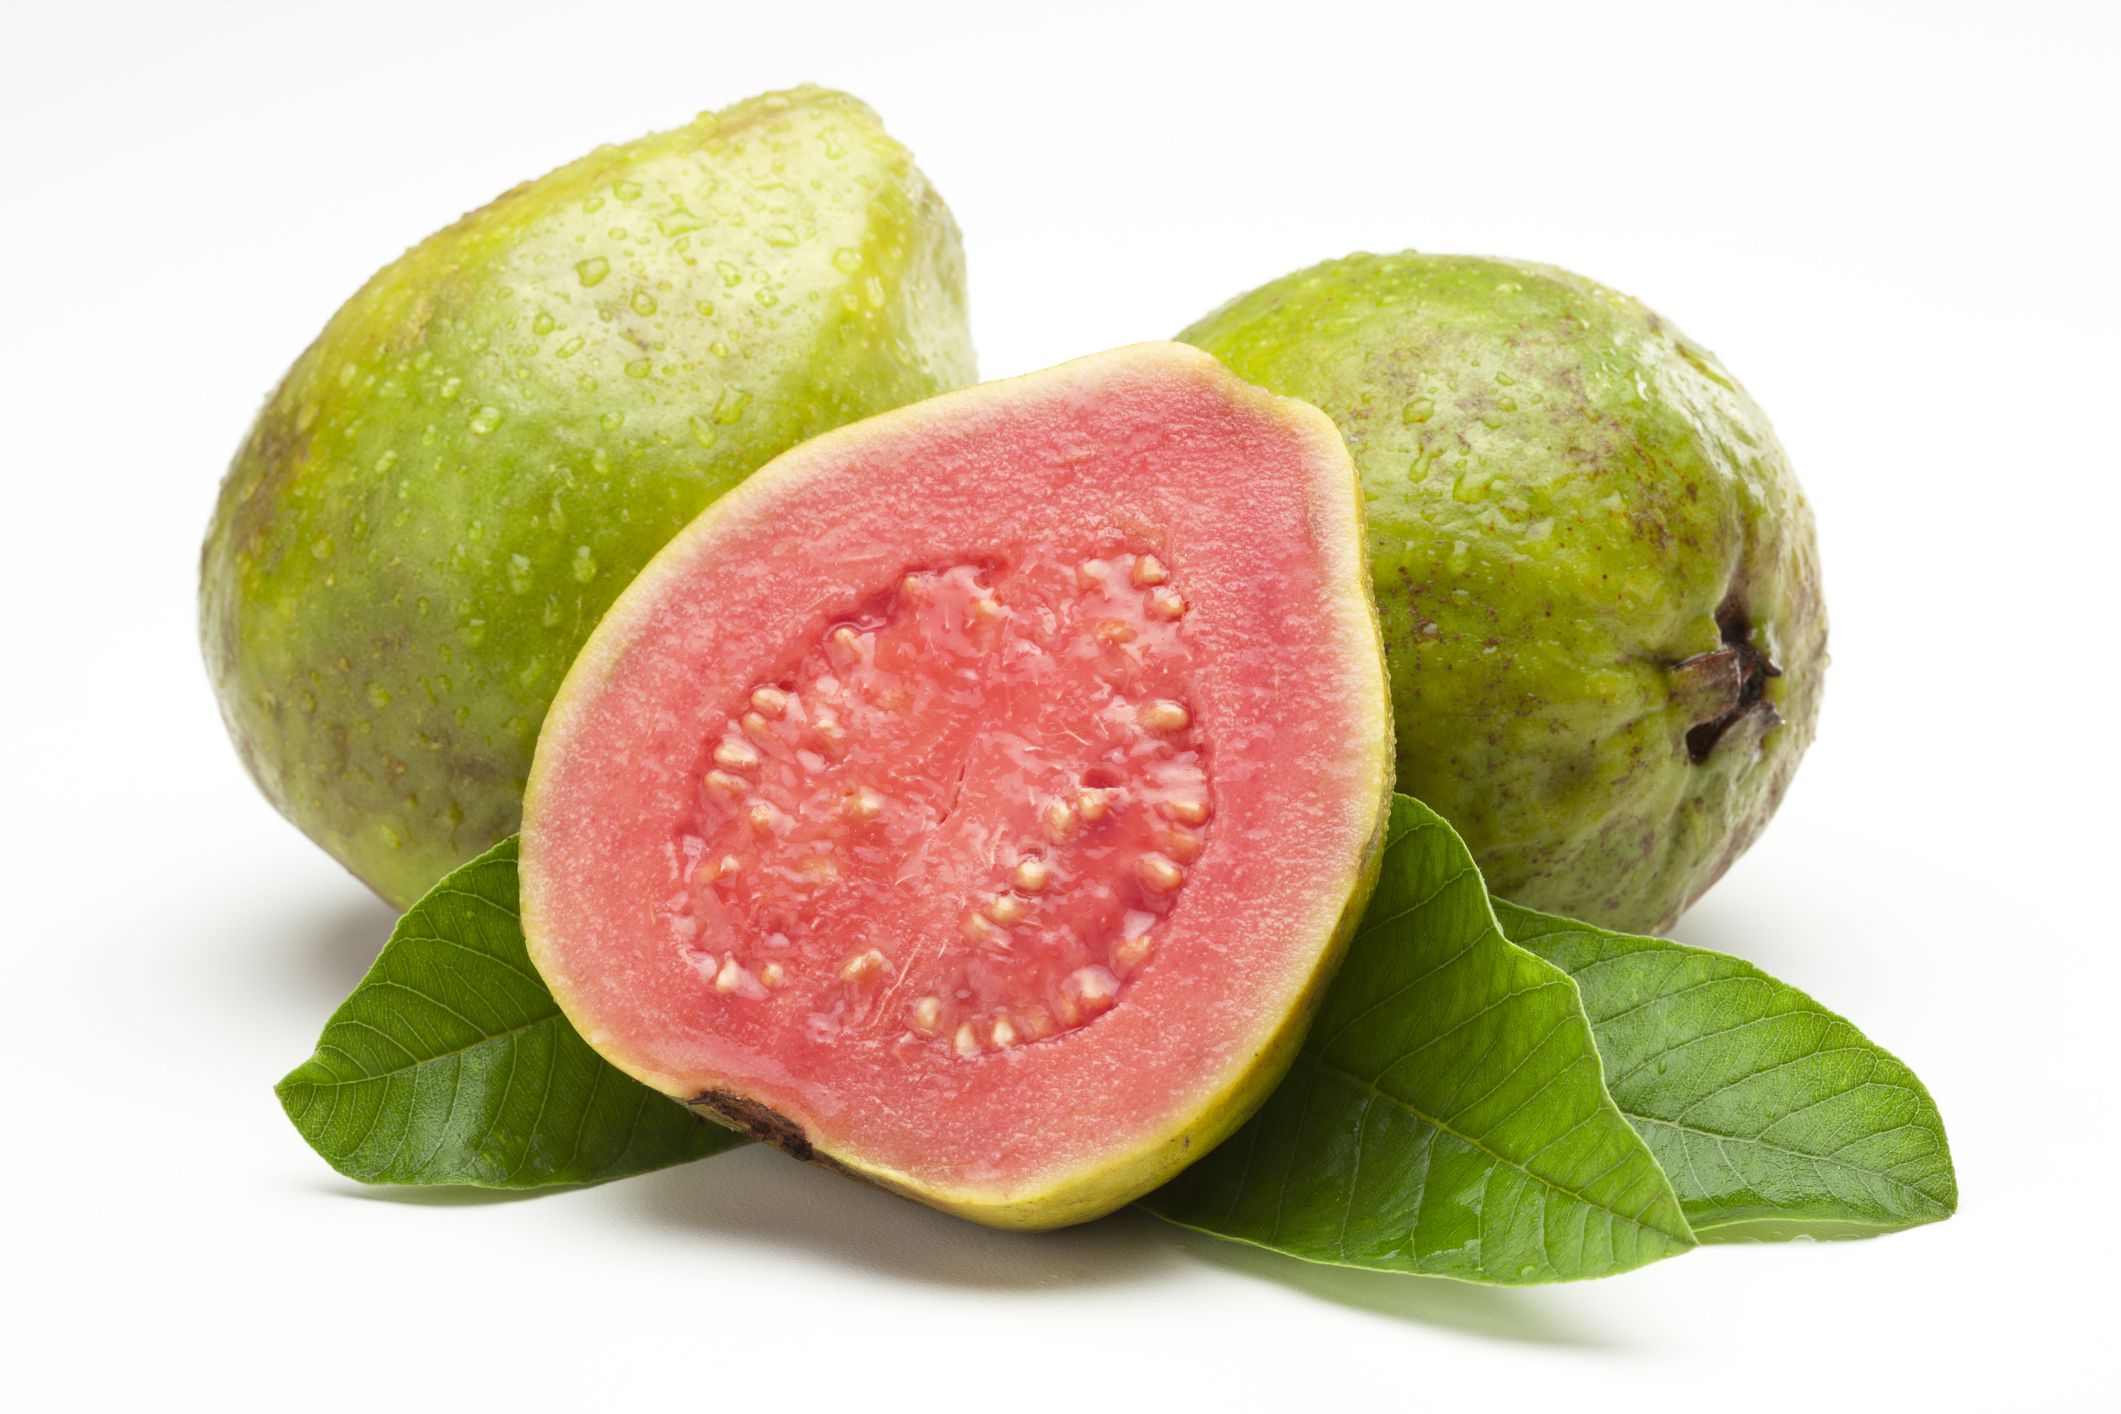 la fruta con efecto hipoglucemiante que reduce el azúcar y regula la presión arterial